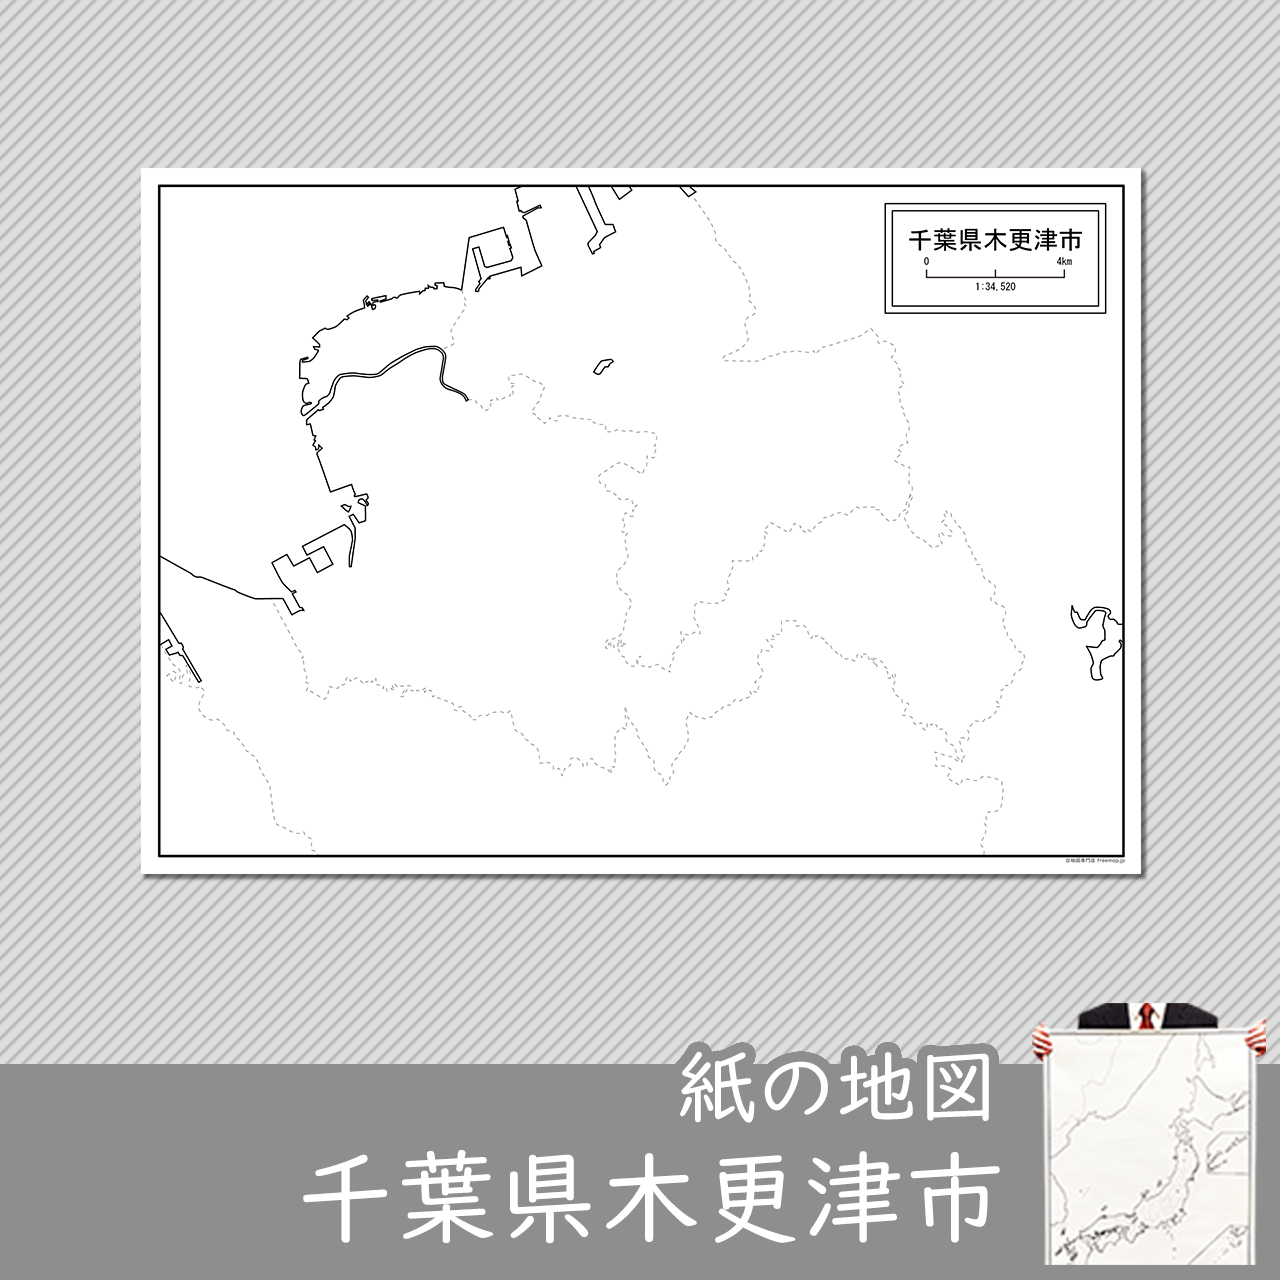 木更津市の紙の白地図のサムネイル